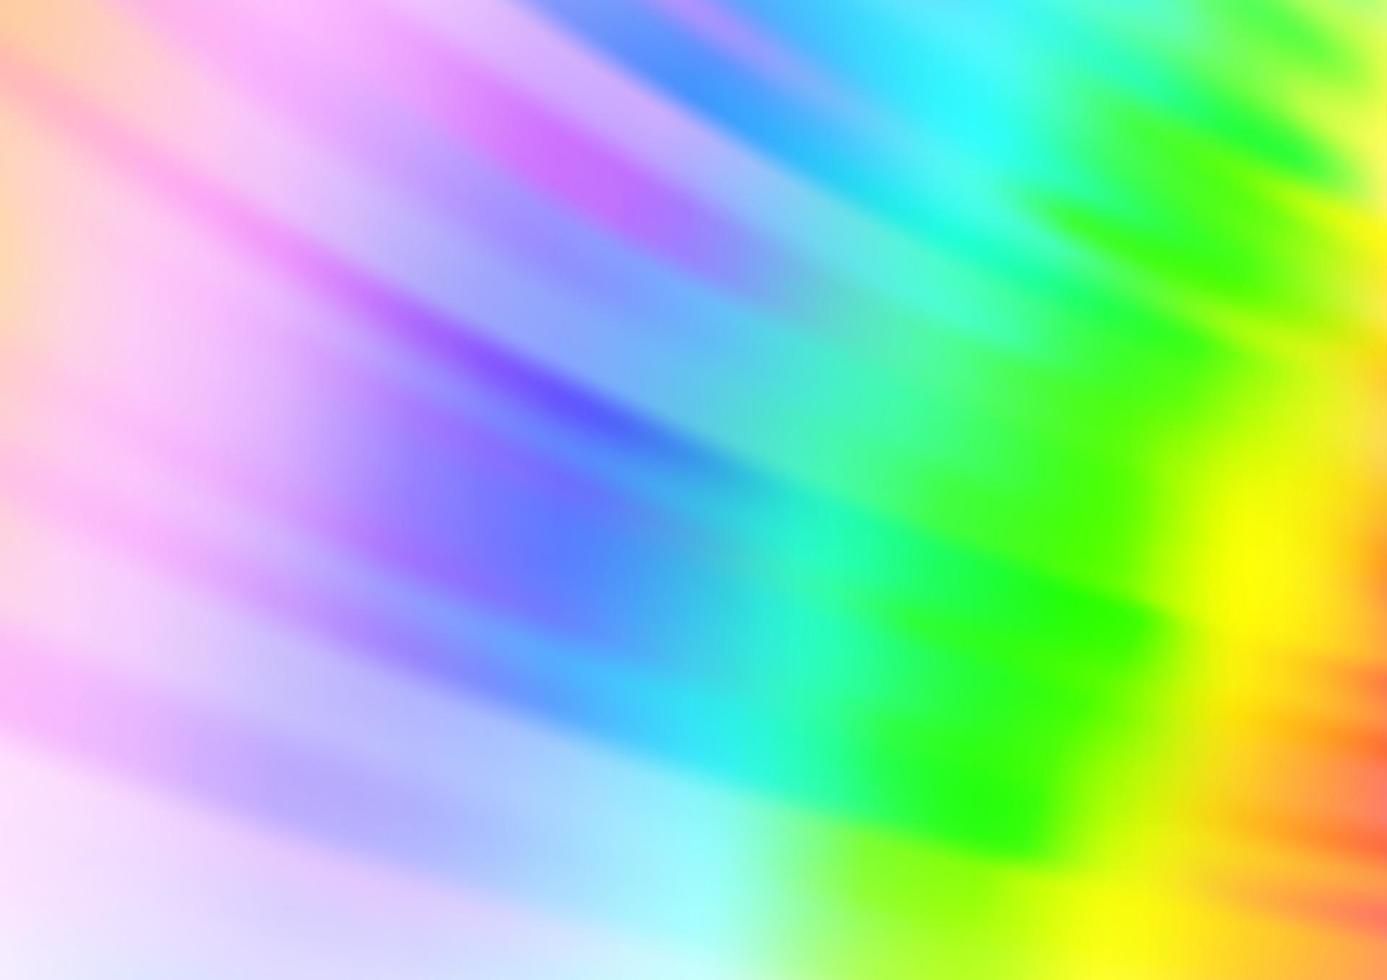 luz multicolor, fundo do vetor do arco-íris com linhas retas.